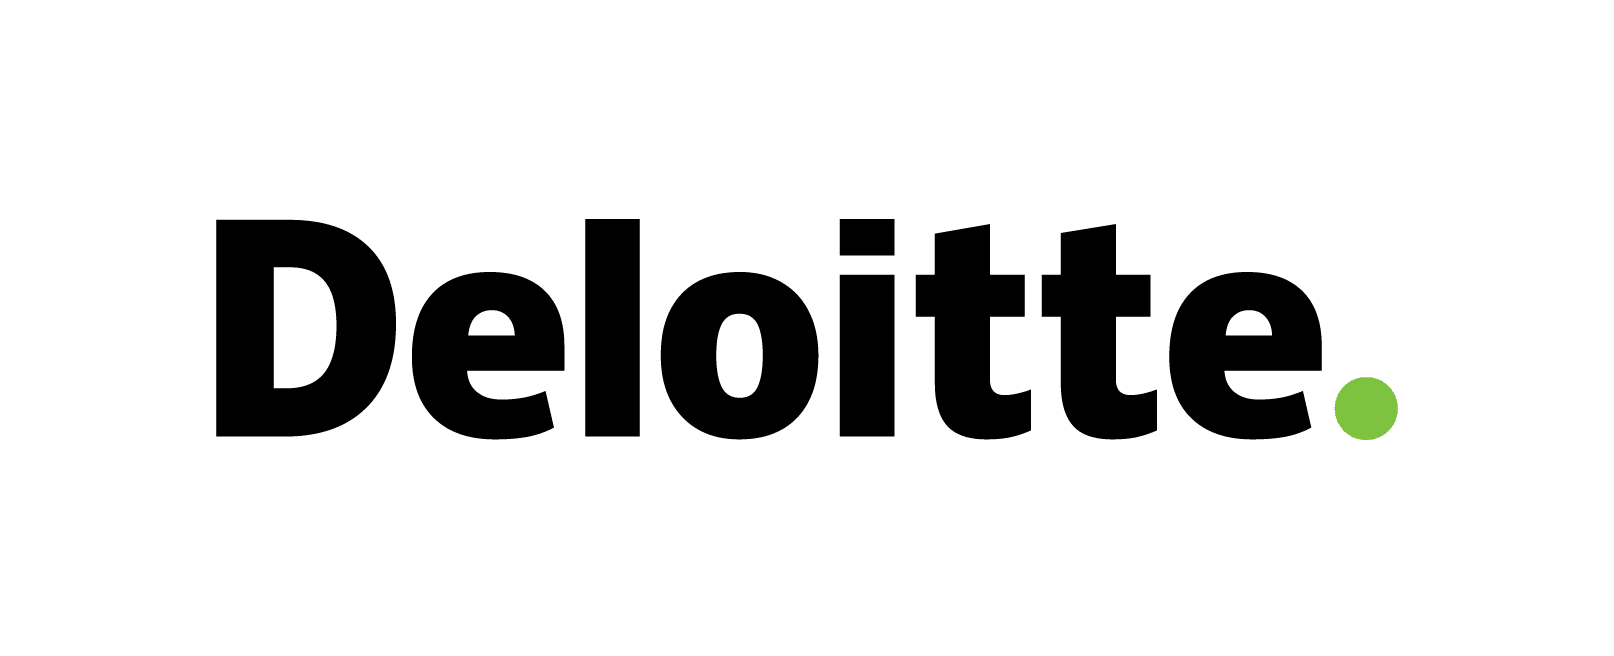 Deloitte’in Türkiye’de Pandemi Raporlarından Önemli Satır Araları